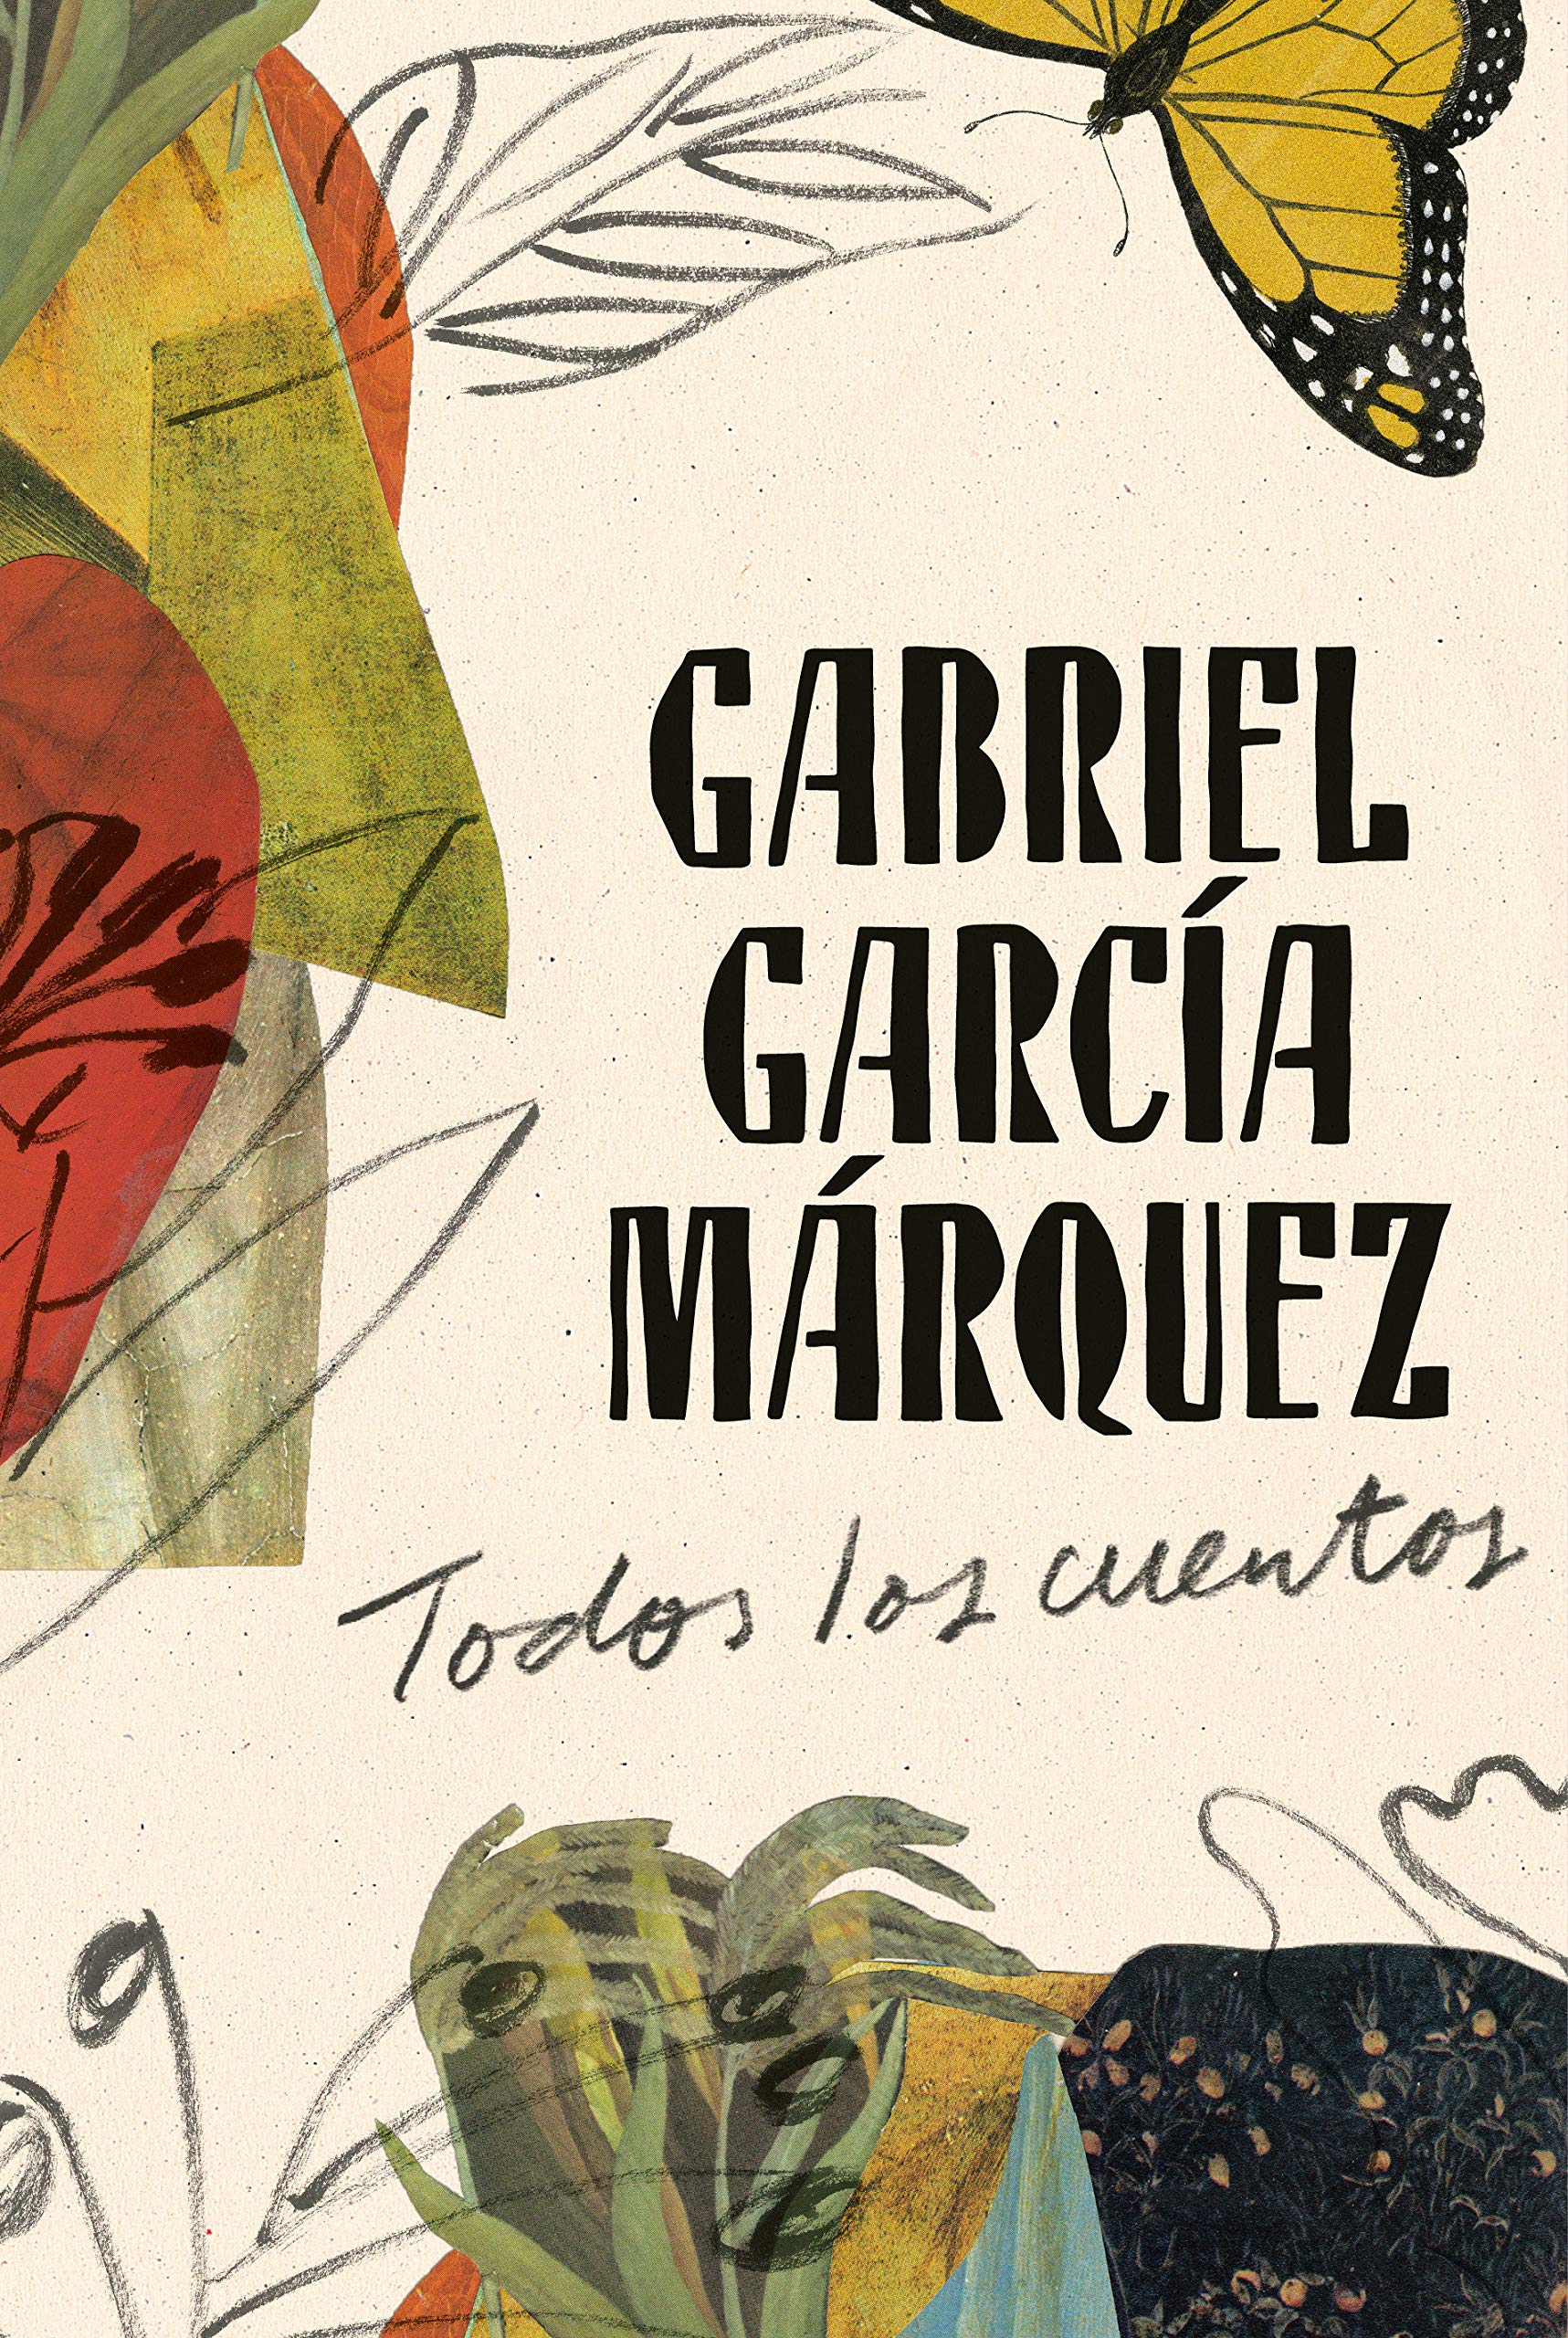 Discurso de Gabriel García Márquez en la entrega del Premio Nobel. 1982